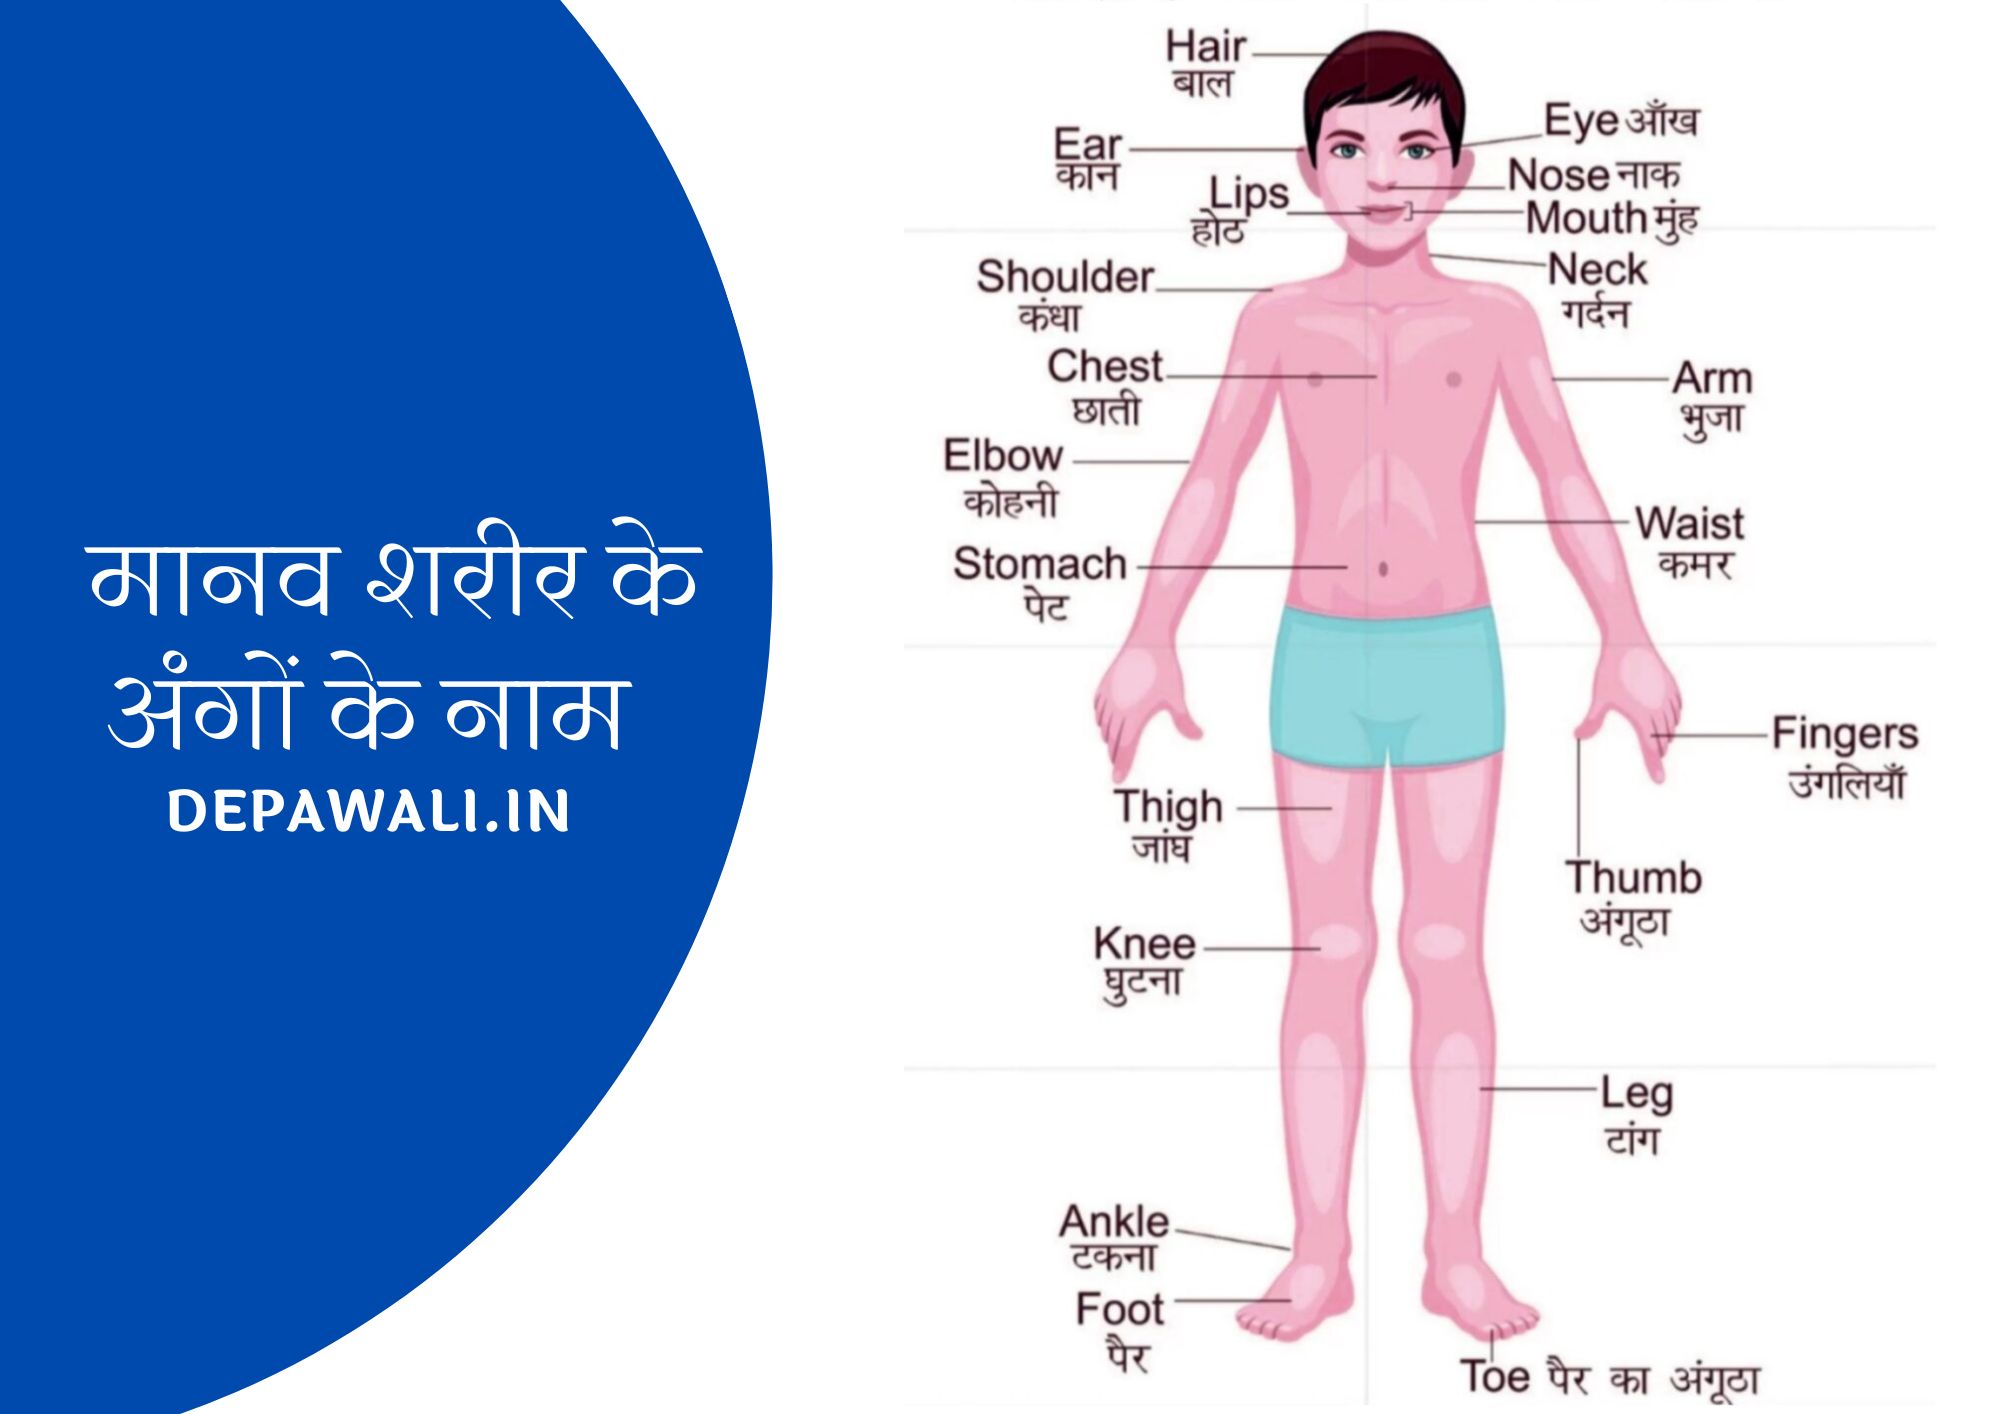 मानव शरीर के अंगों के नाम हिंदी व इंग्लिश में (Human Body Parts Name In Hindi And English) - Parts Of Body Name In Hindi And English